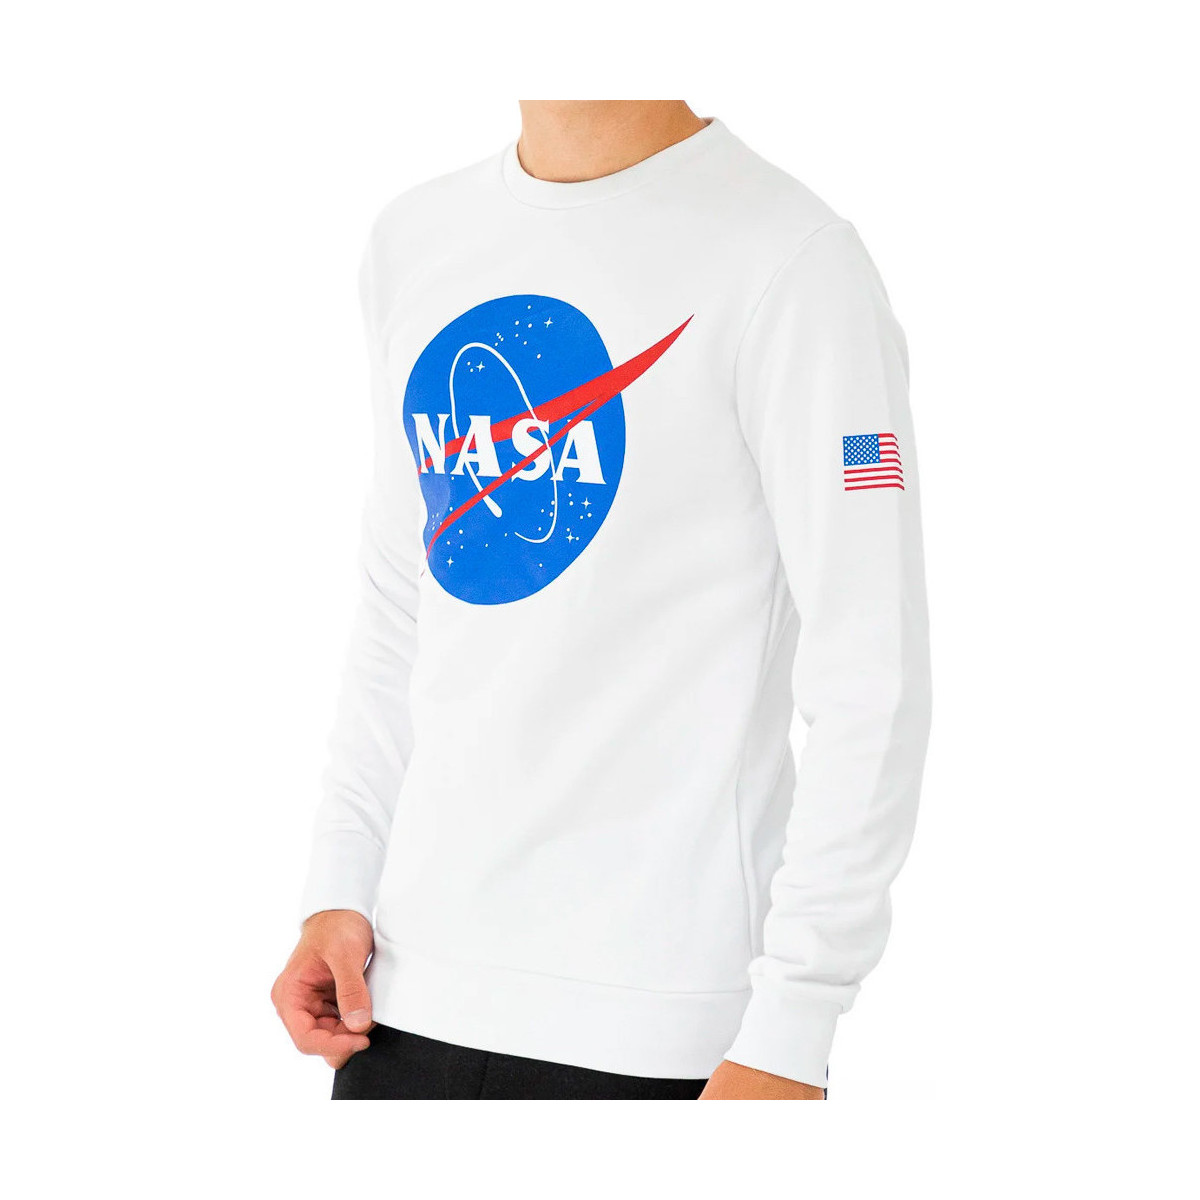 Vêtements Homme Sweats Nasa -NASA11S Blanc